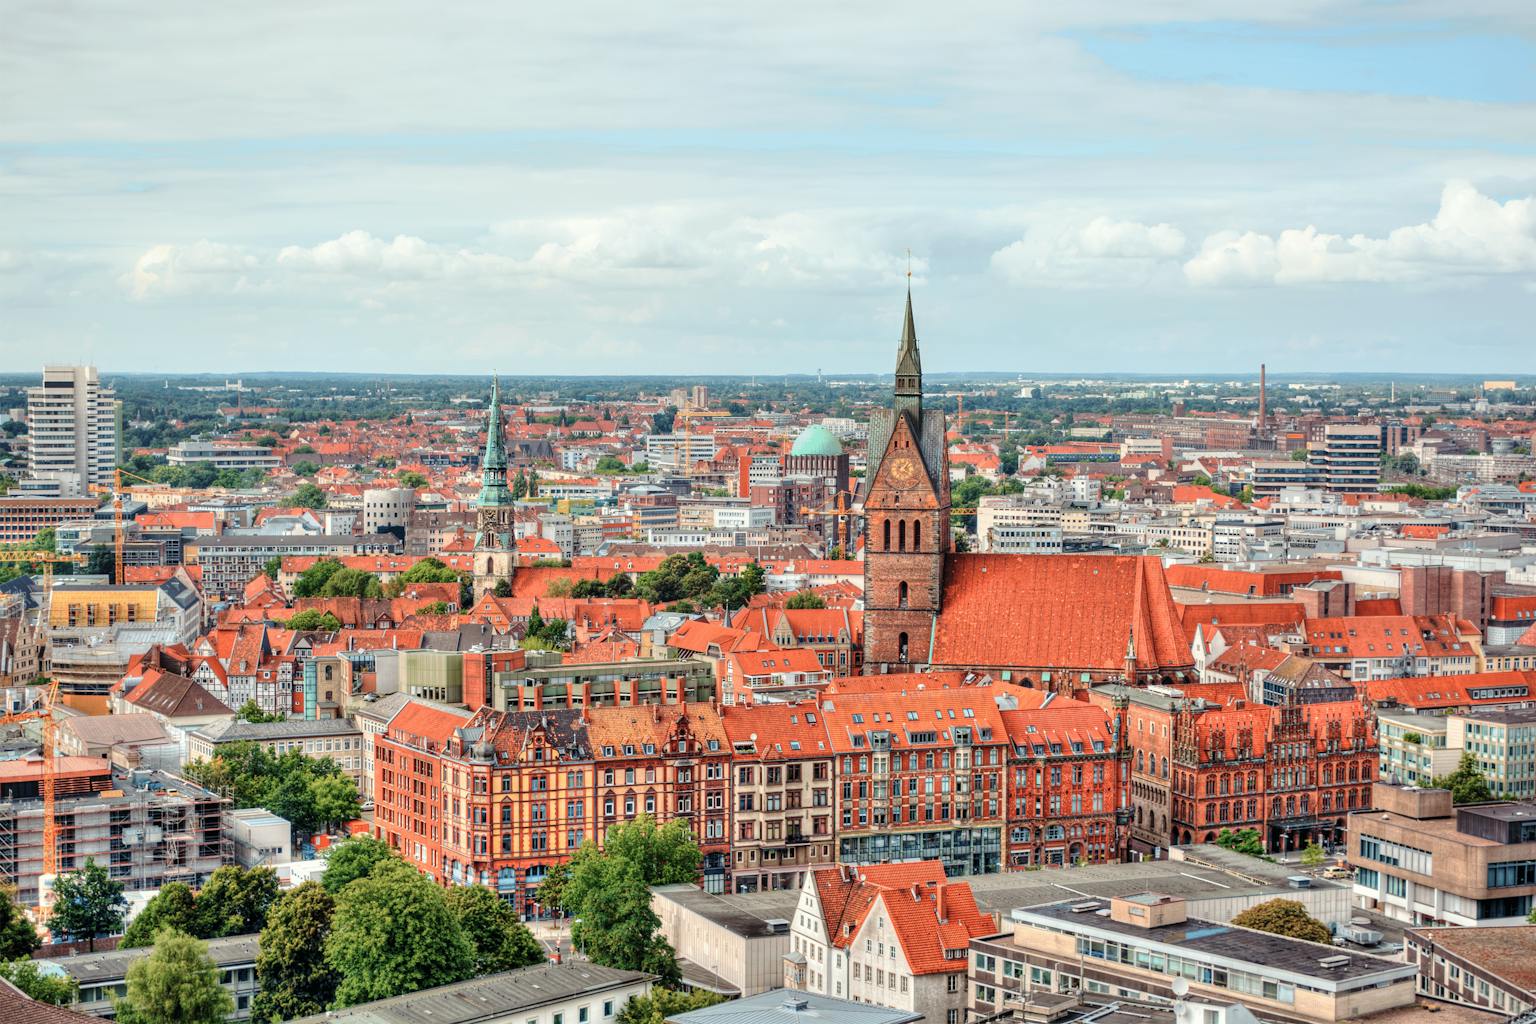 Blick auf die Stadt Hannover